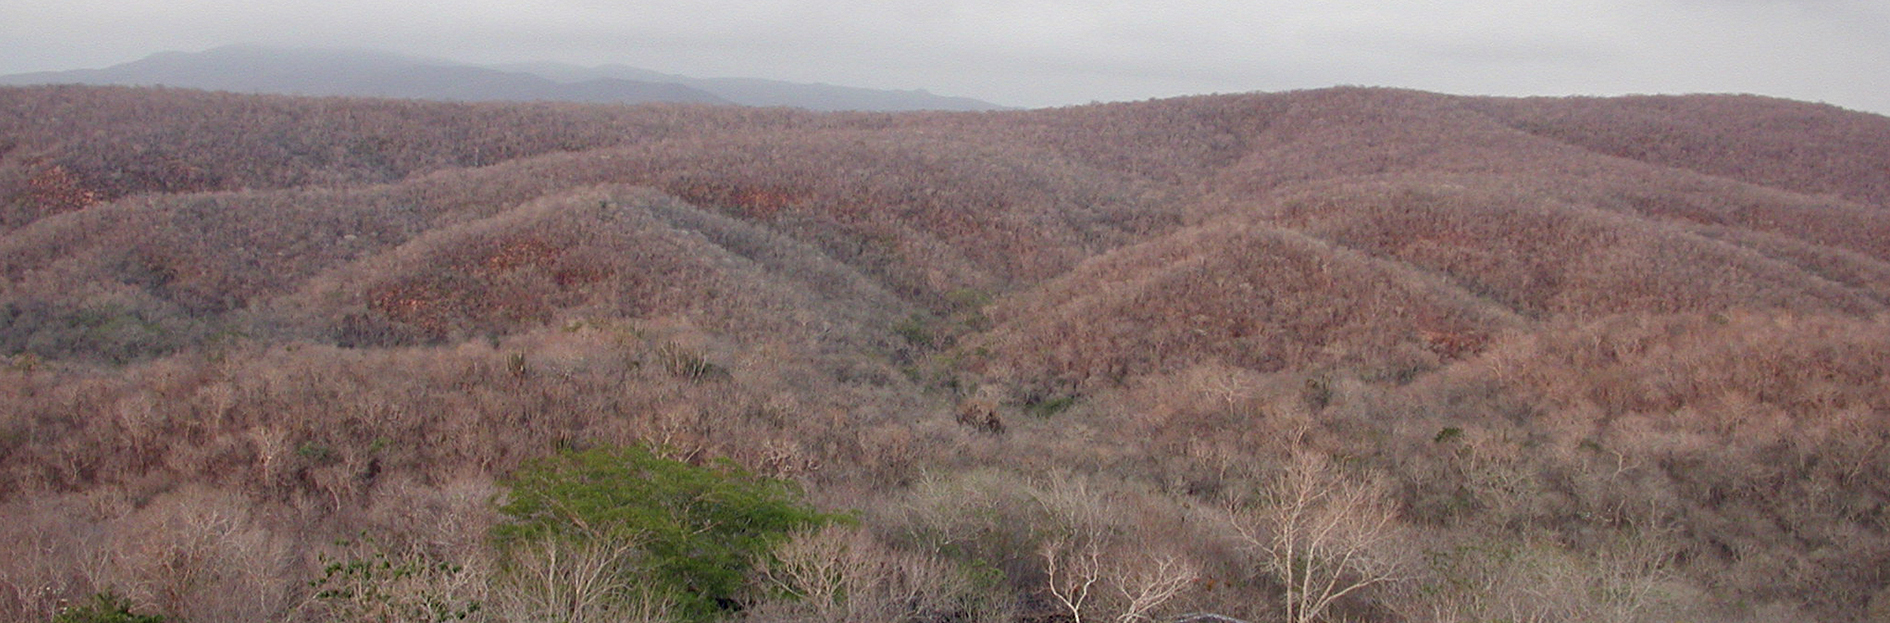 Selva seca, Estación Chamela - Instituto de Biología, UNAM